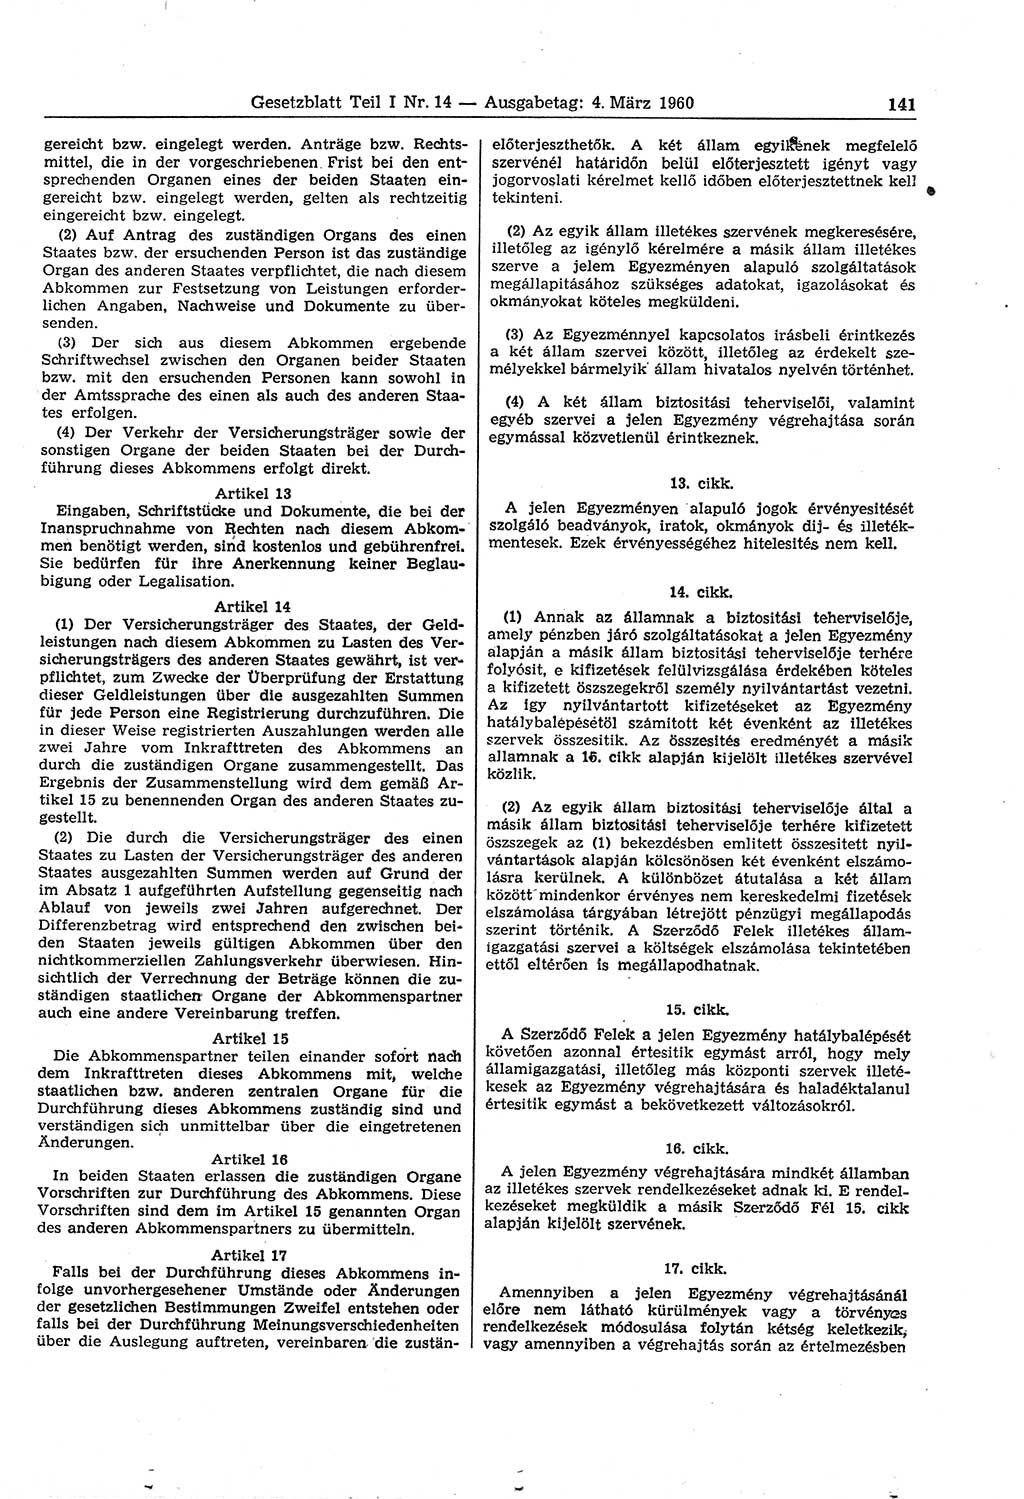 Gesetzblatt (GBl.) der Deutschen Demokratischen Republik (DDR) Teil Ⅰ 1960, Seite 141 (GBl. DDR Ⅰ 1960, S. 141)